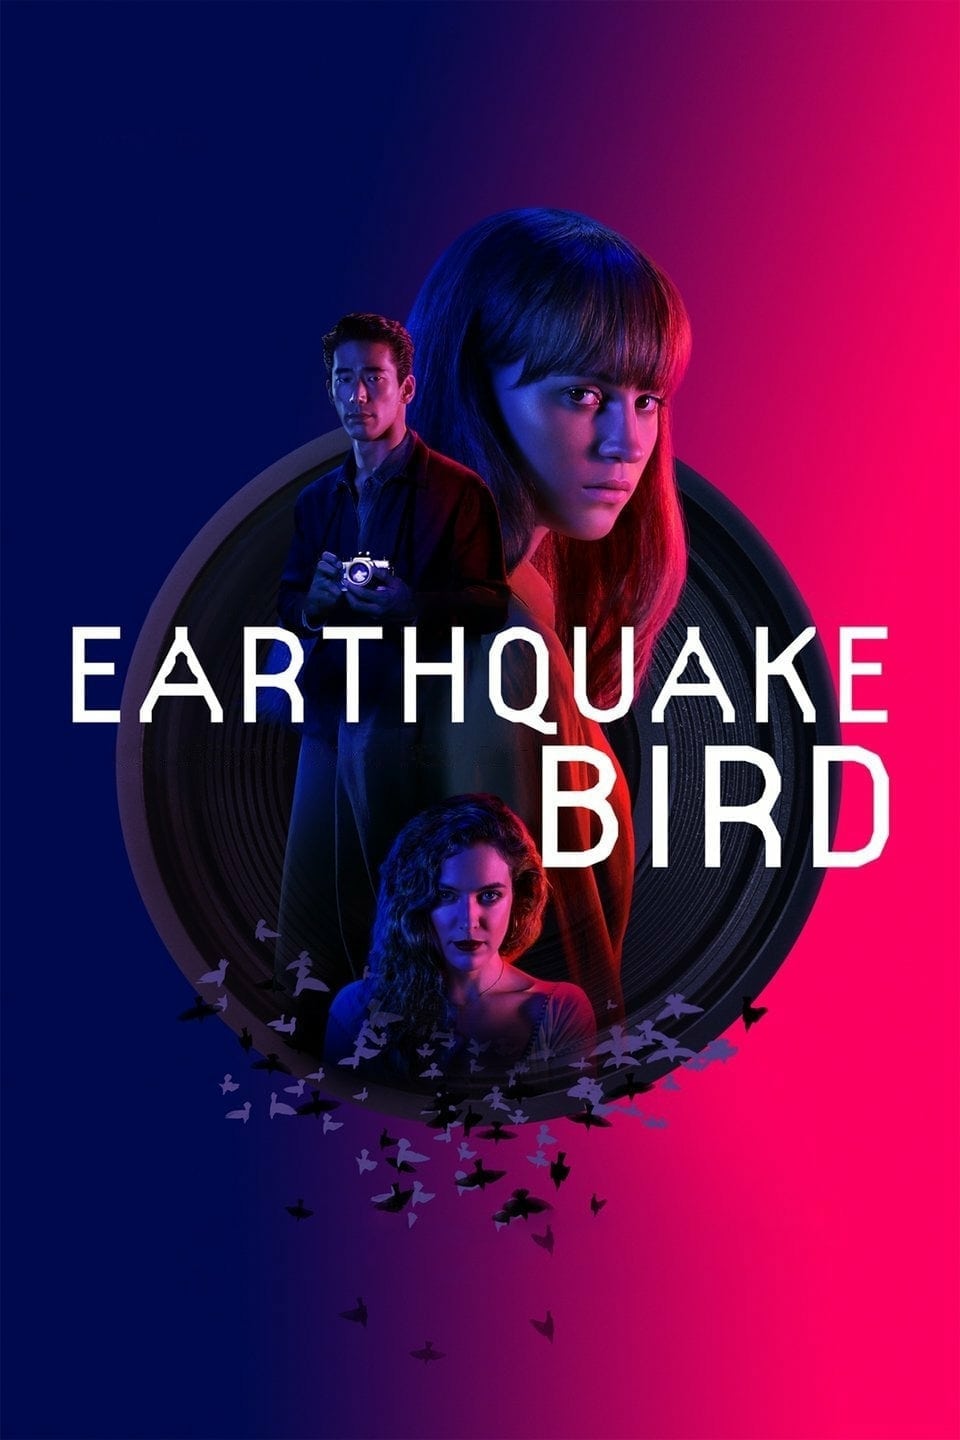 Cánh chim nơi địa chấn (Earthquake Bird) [2019]